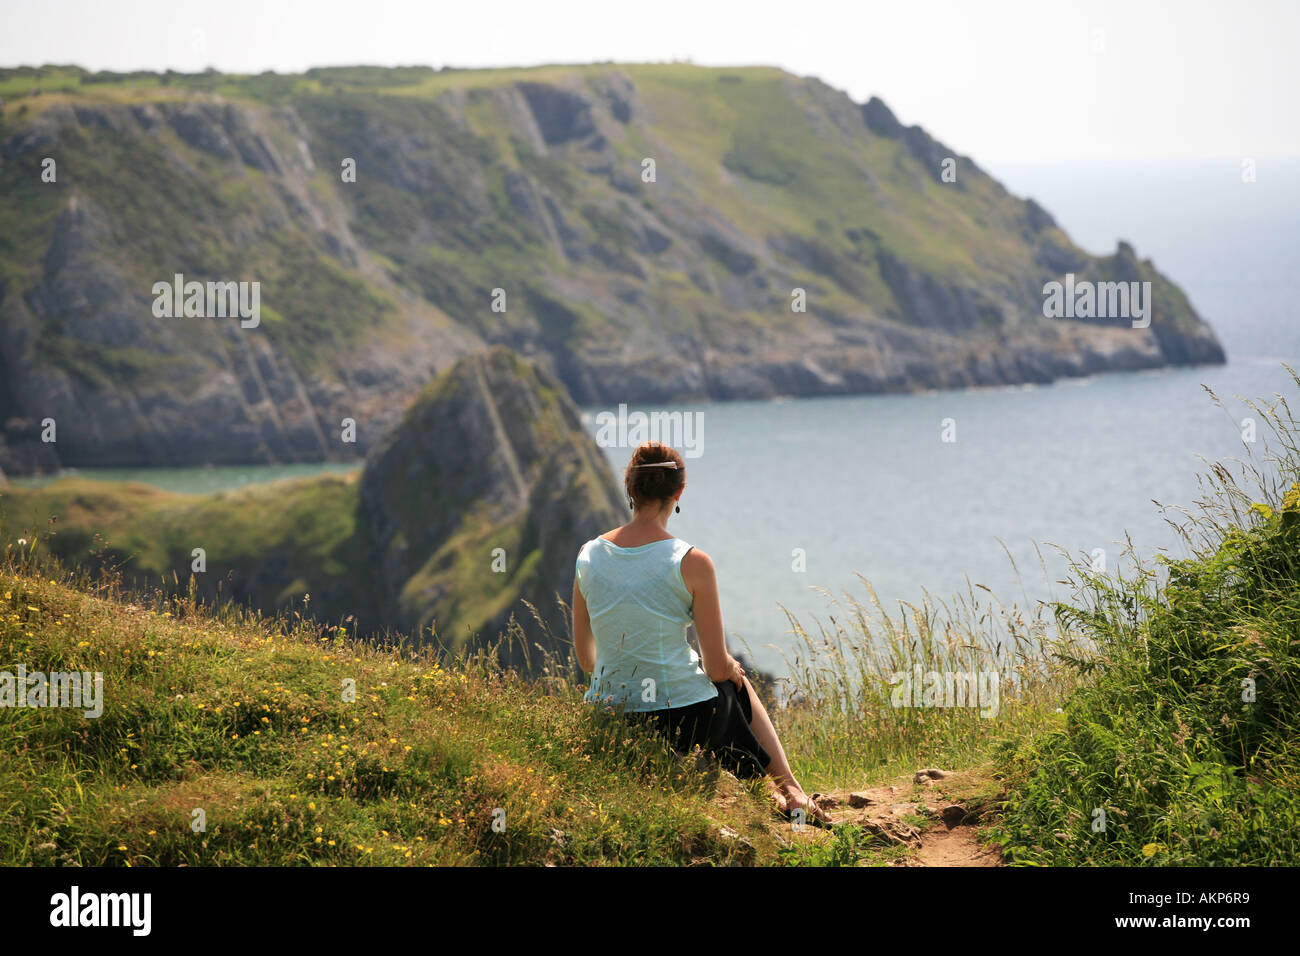 Hommes célibataires femme jeune femme assise sur une falaise pittoresque chemin des falaises surplombant la baie de trois Gower Wales UK Banque D'Images